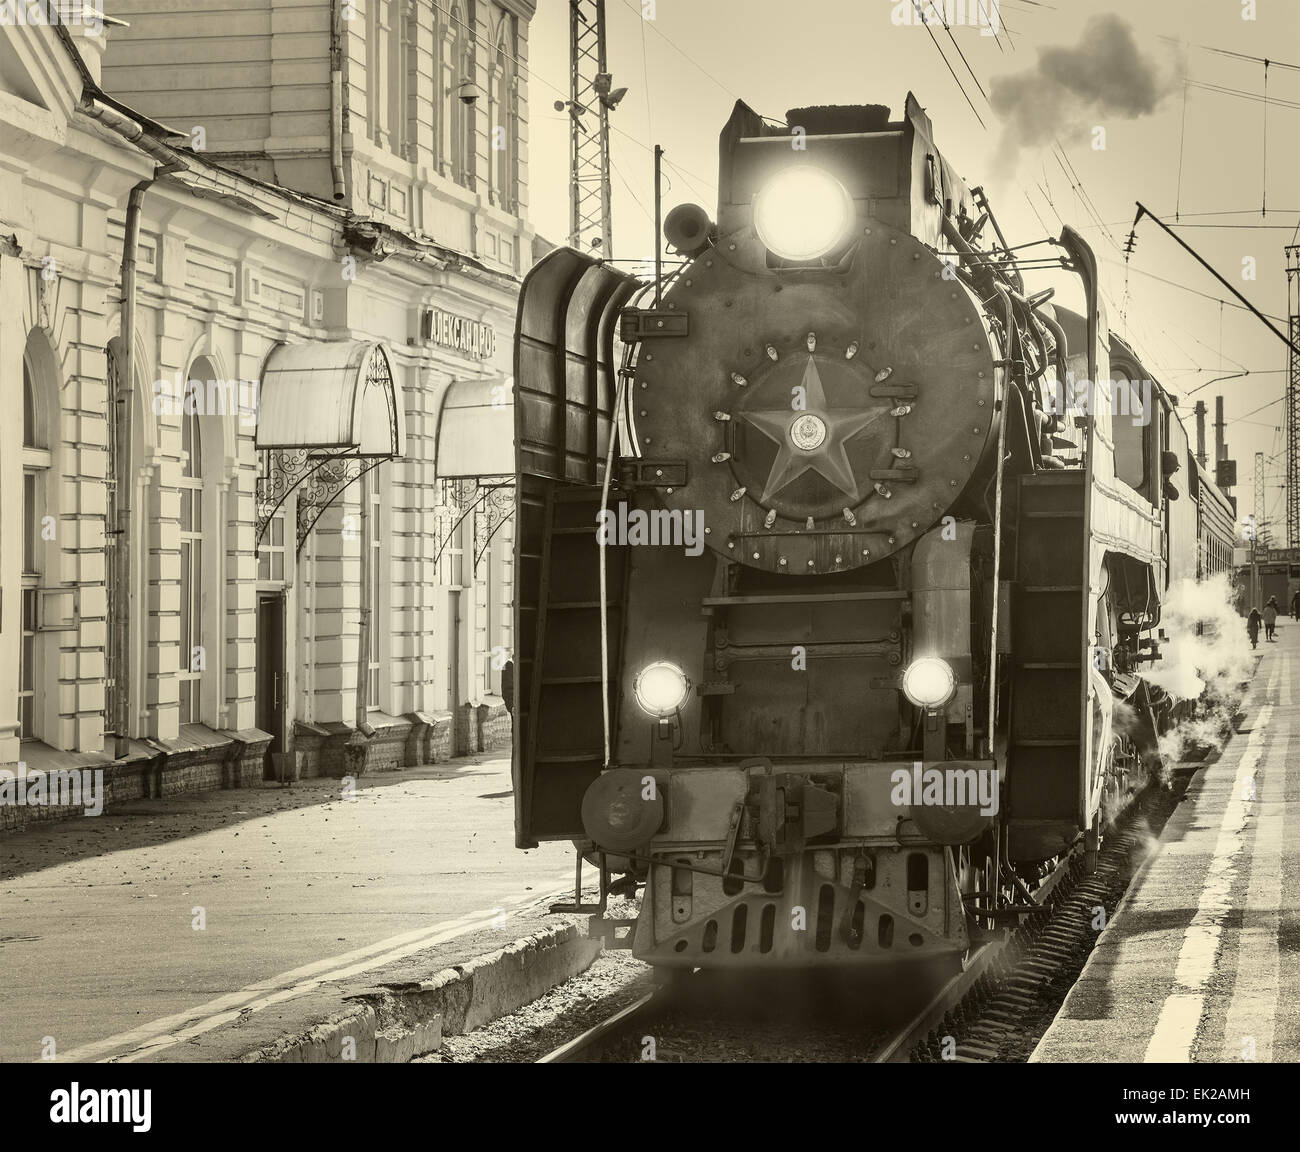 Retro llega el tren de vapor a la estación. Imagen Vintage. Foto de stock